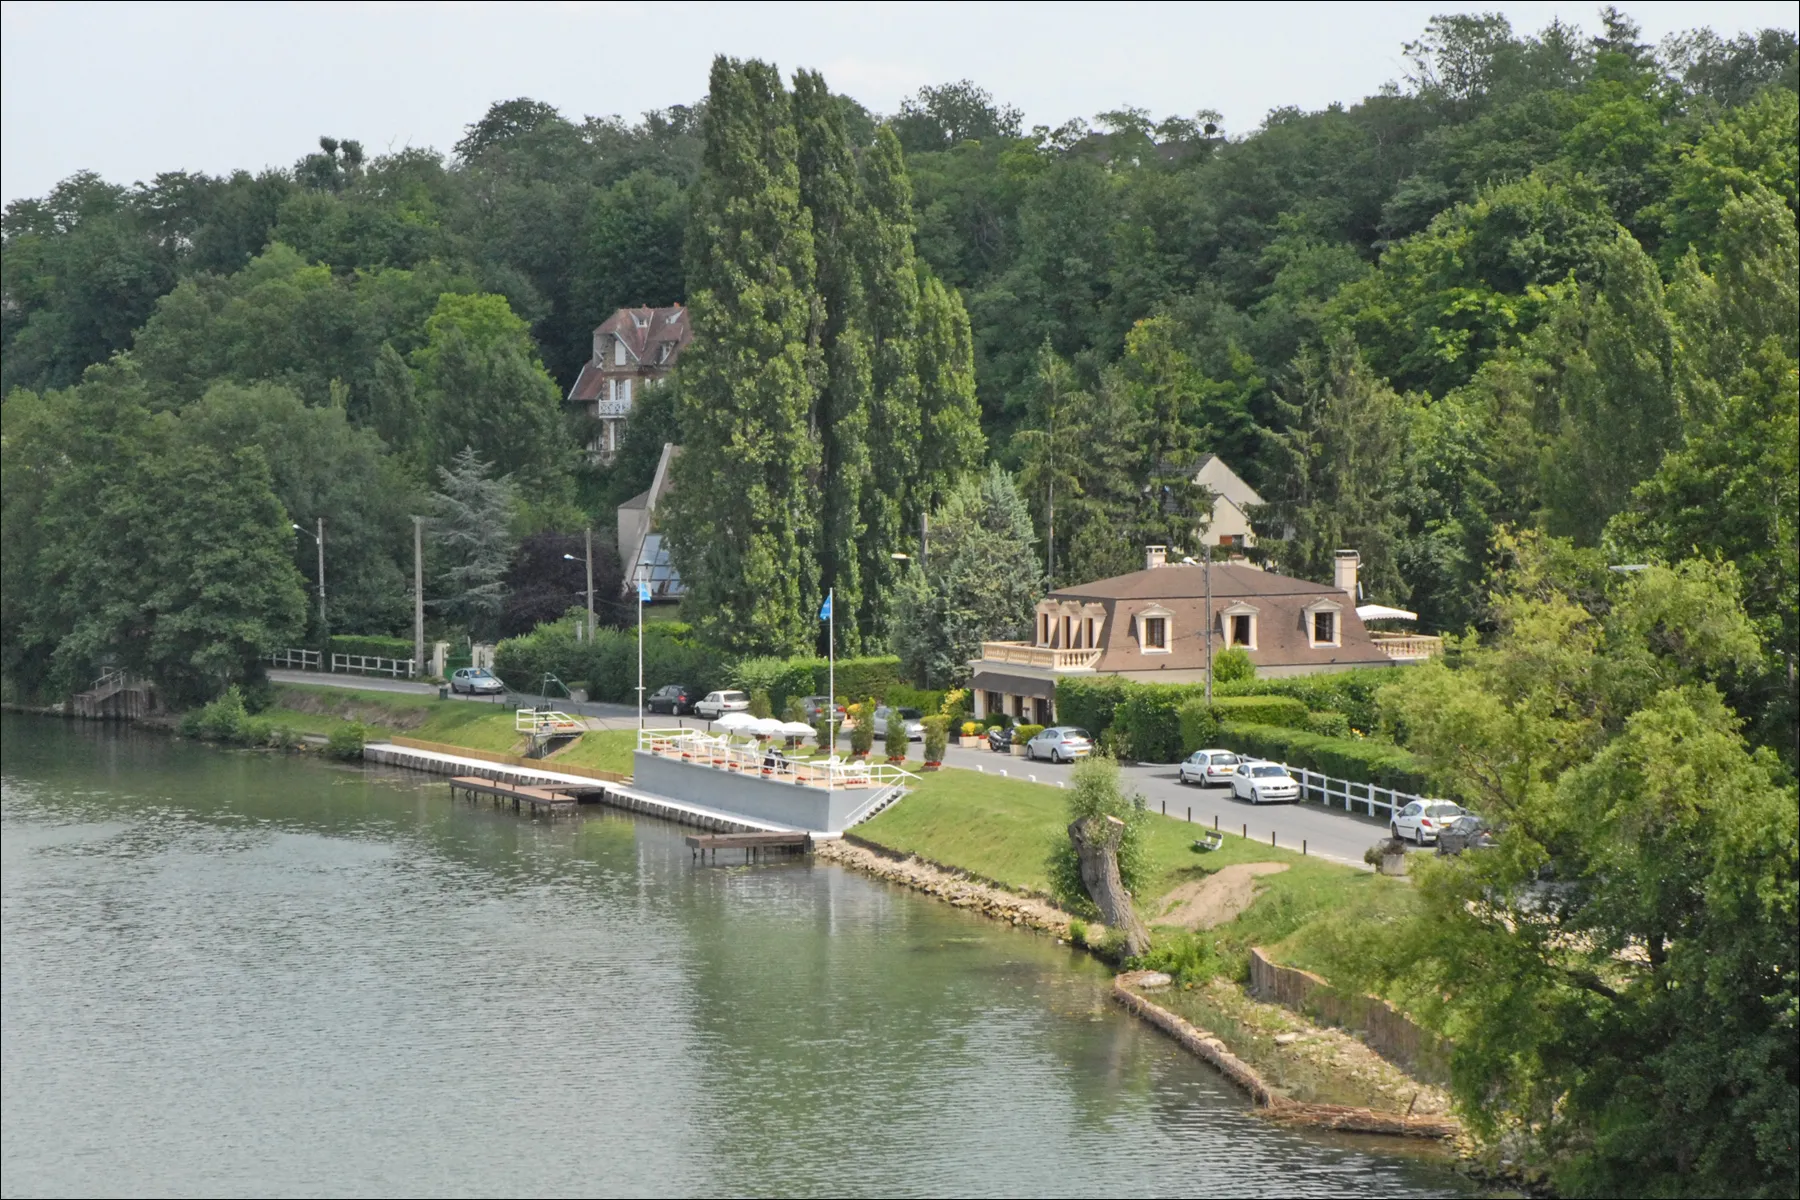 Photo showing: L'Oise est une rivière du nord de la France. Elle prend sa source en Belgique, à 309 mètres d'altitude dans le massif forestier Bois de Bourlers, à Forges au sud de Chimay (Hainaut), et se jette dans la Seine à Conflans-Sainte-Honorine, dans le département des Yvelines.(Wikipedia)

fr.wikipedia.org/wiki/Oise_%28rivi%C3%A8re%29